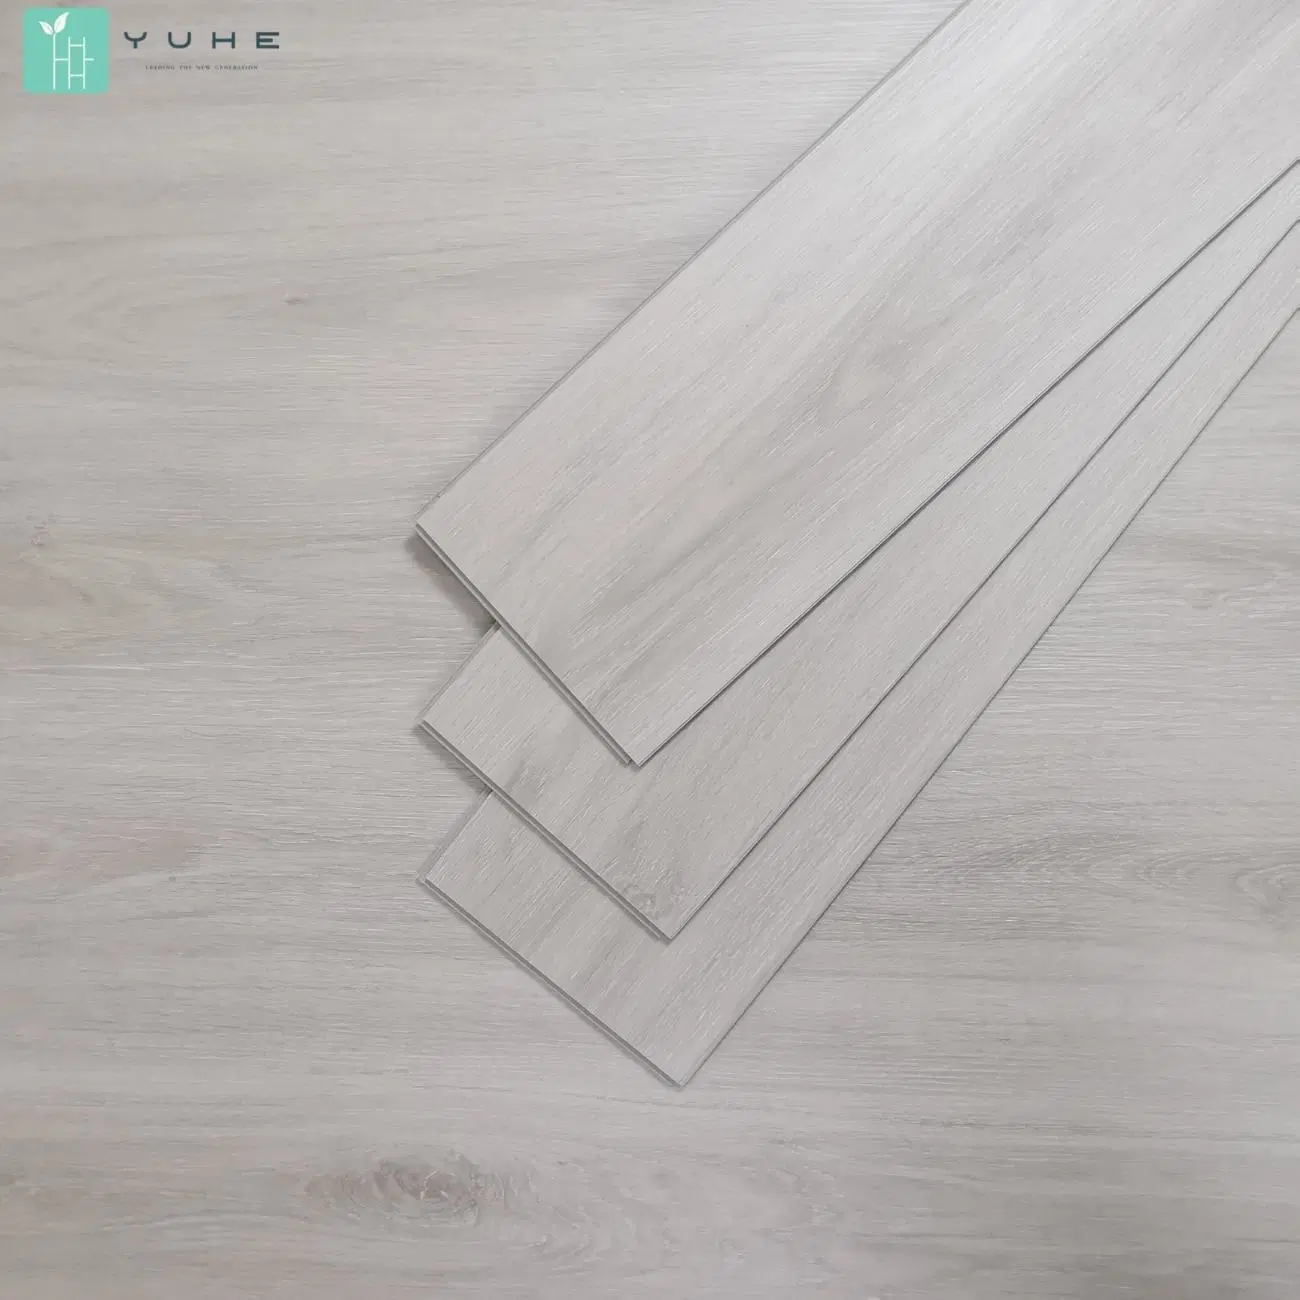 100% Waterproof & Anti-Slip Stone Plastic Floor Tile PVC Raw Material Wood & Marble Look Yh9013-5